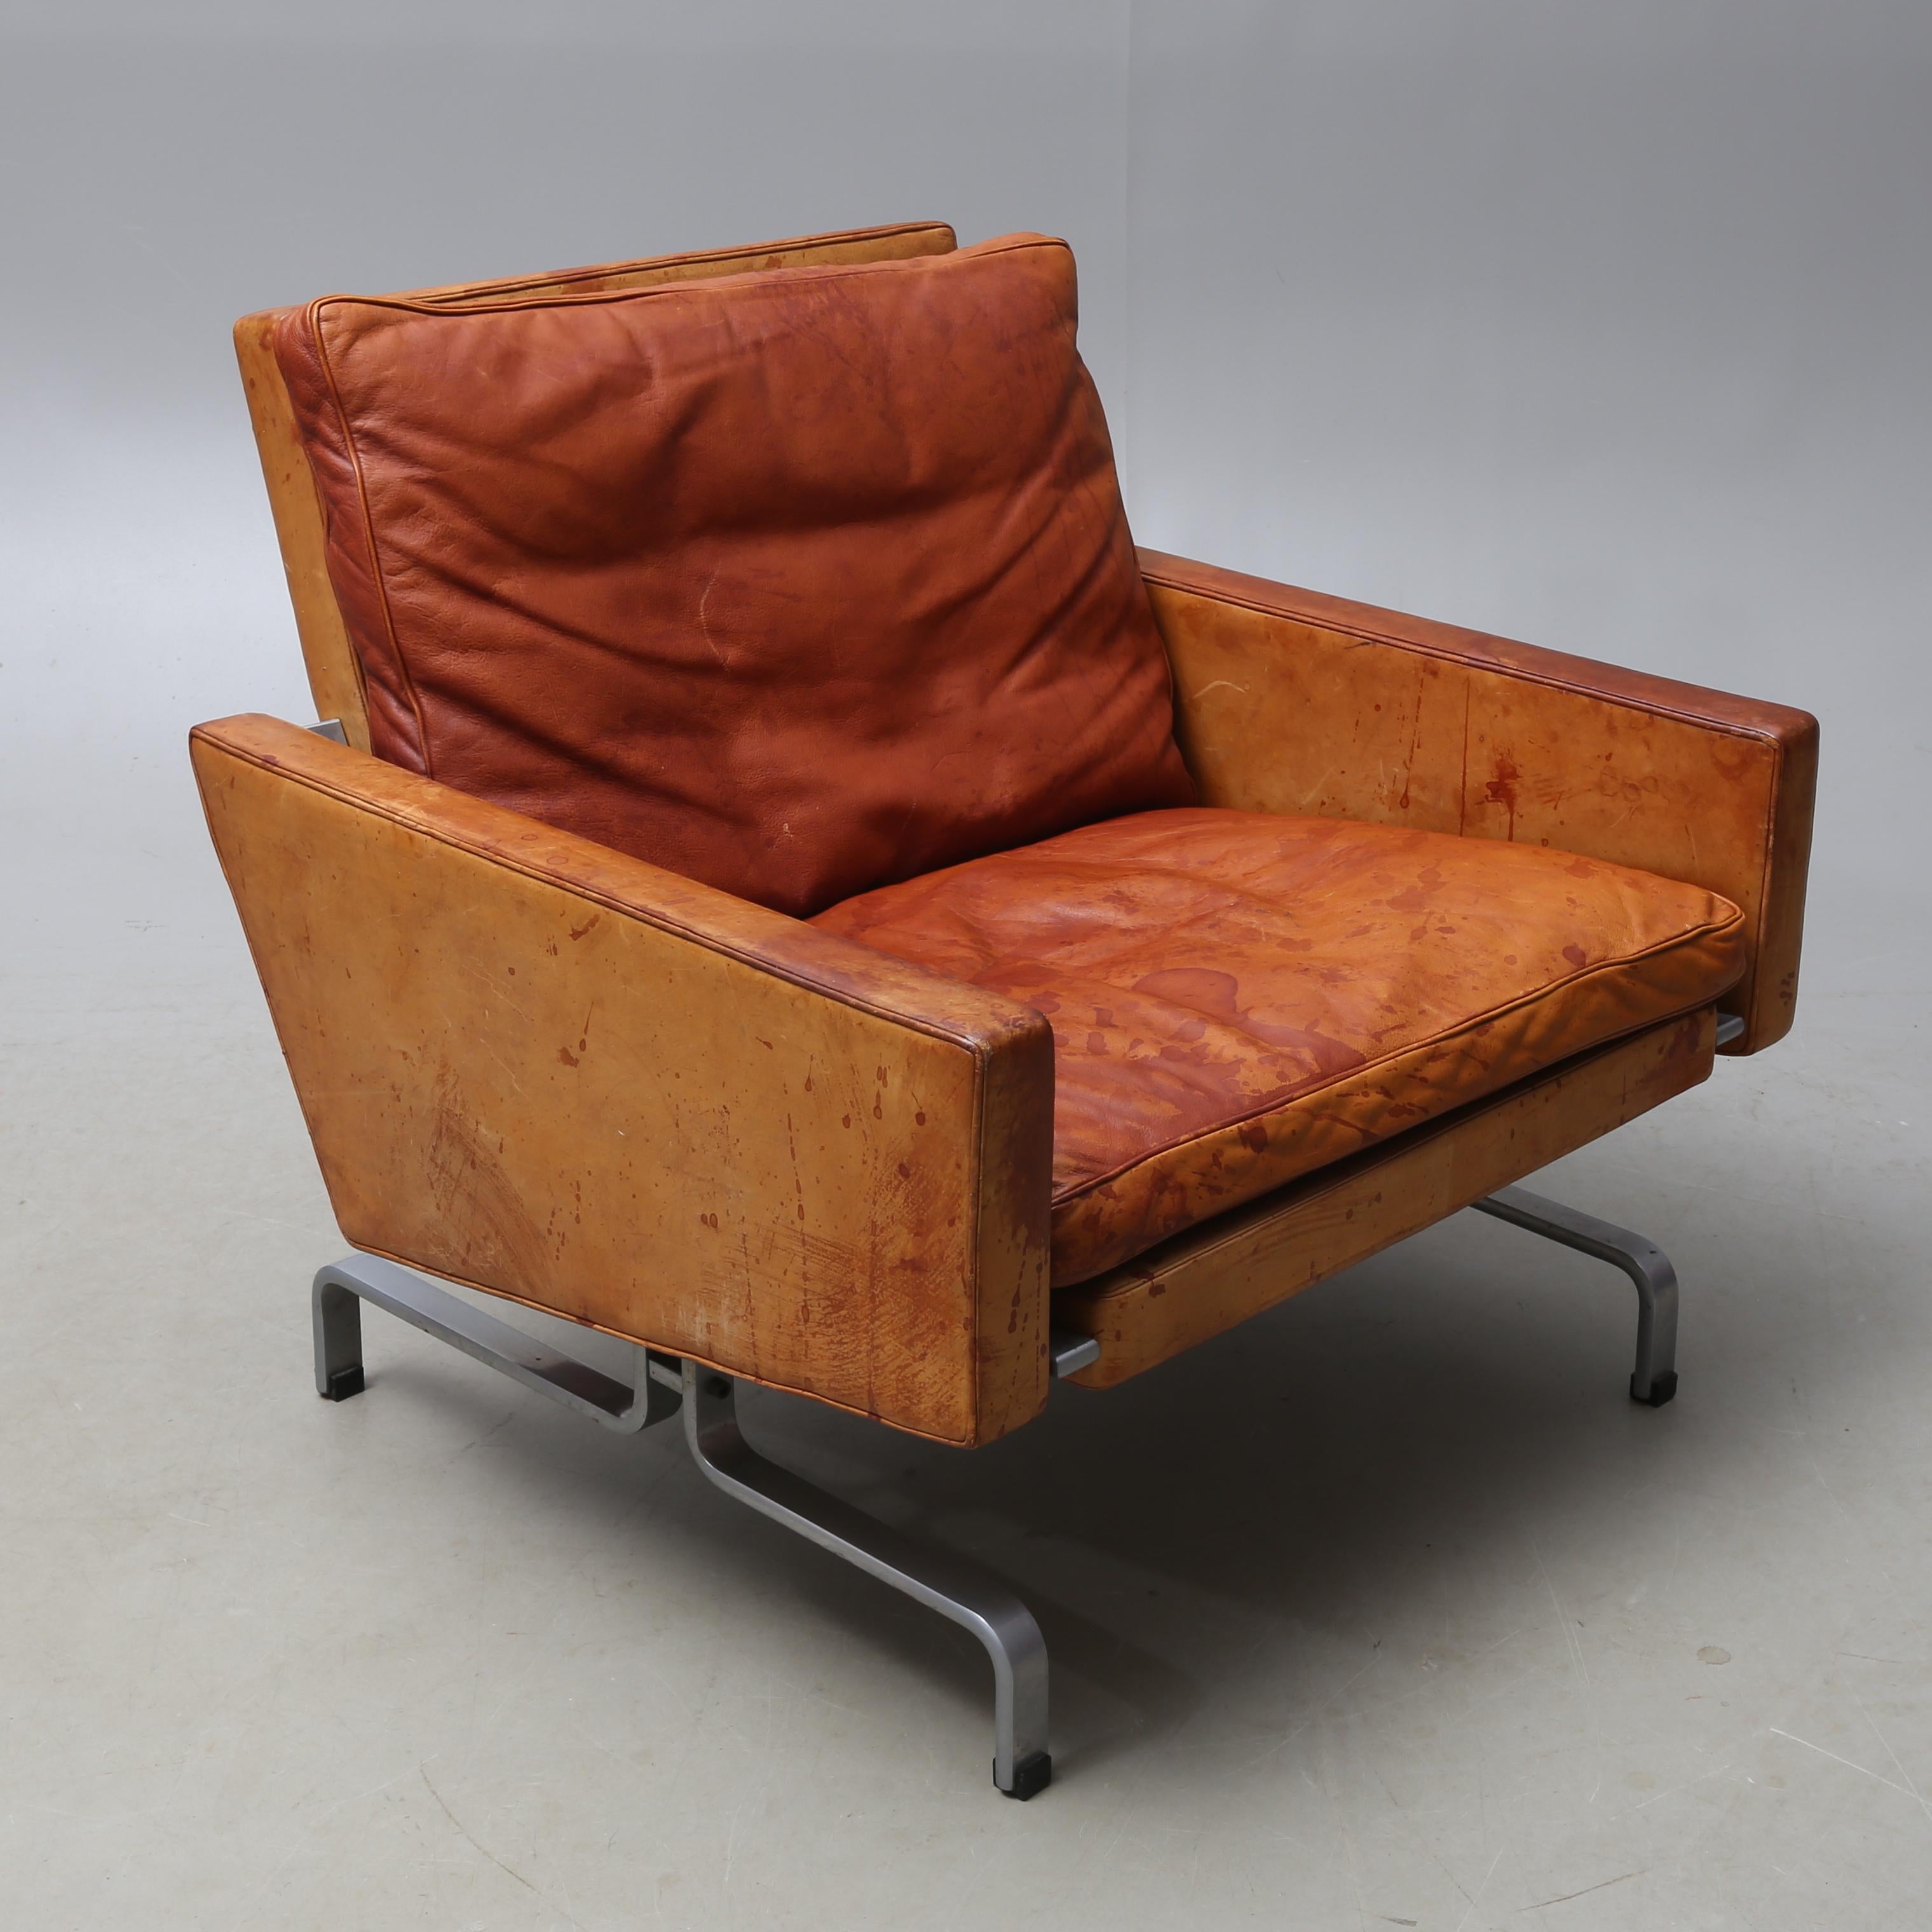 Scandinavian Modern Poul Kjaerholm PK-31/1 Lounge Chairs in Cognac Leather